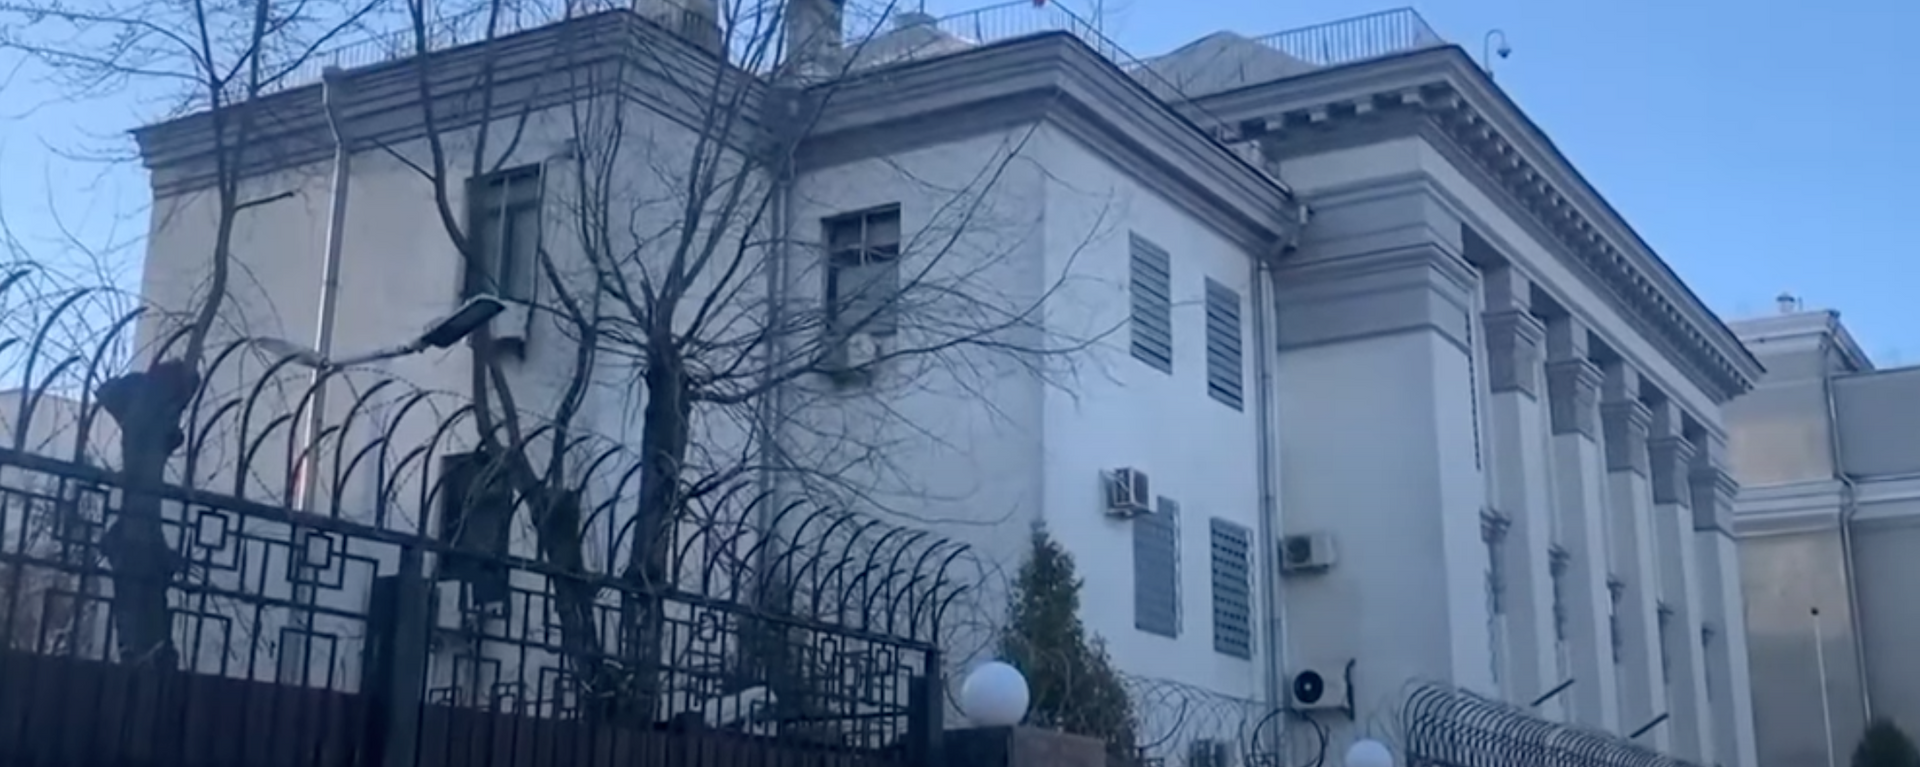 Россия эвакуирует посольство и консульства из Украины - видео - Sputnik Латвия, 1920, 23.02.2022